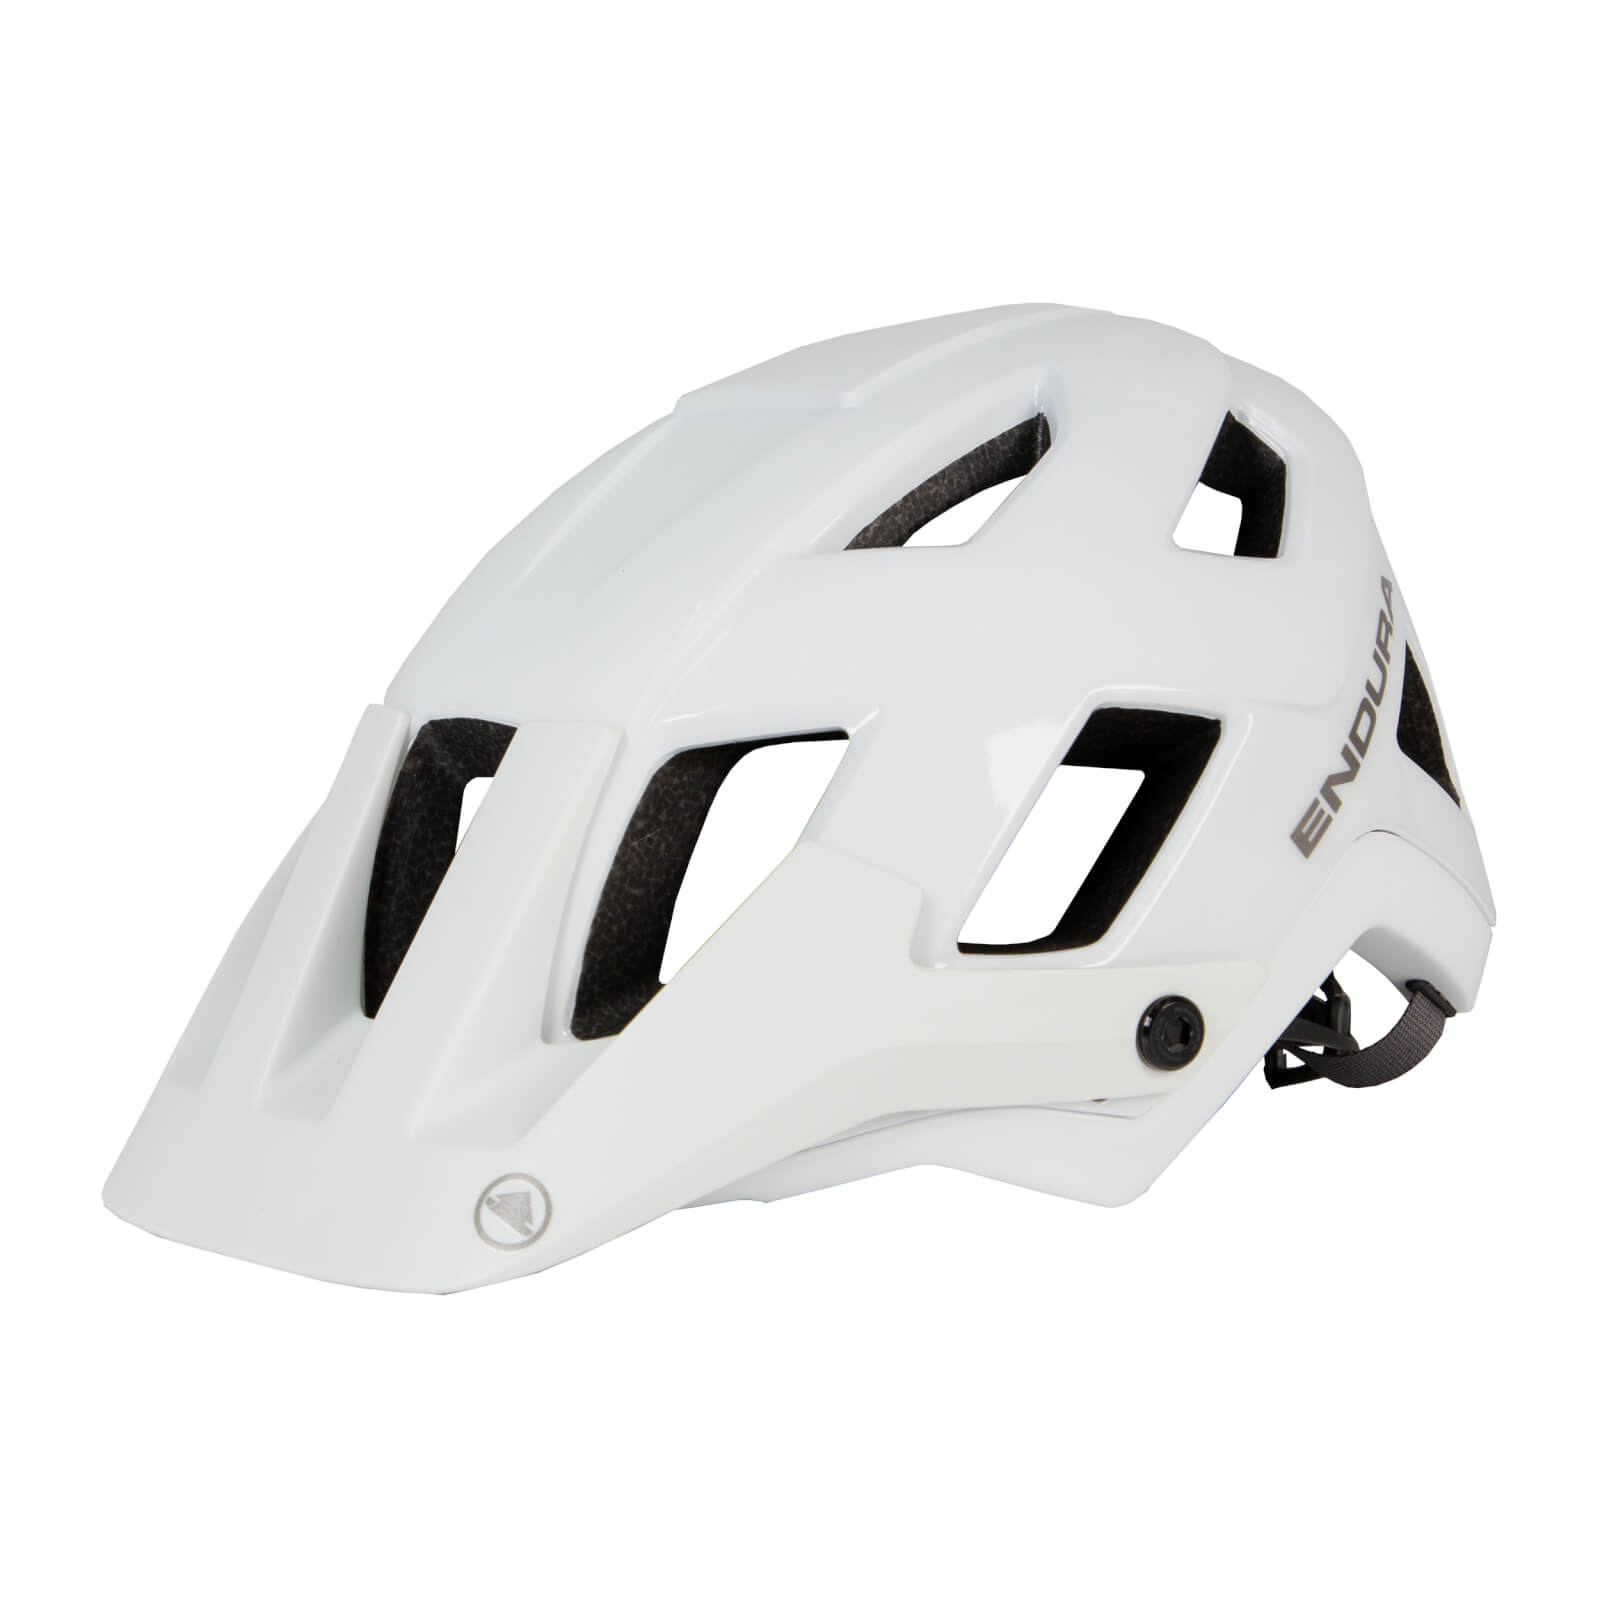 Hummvee Plus Mips Helmet - White